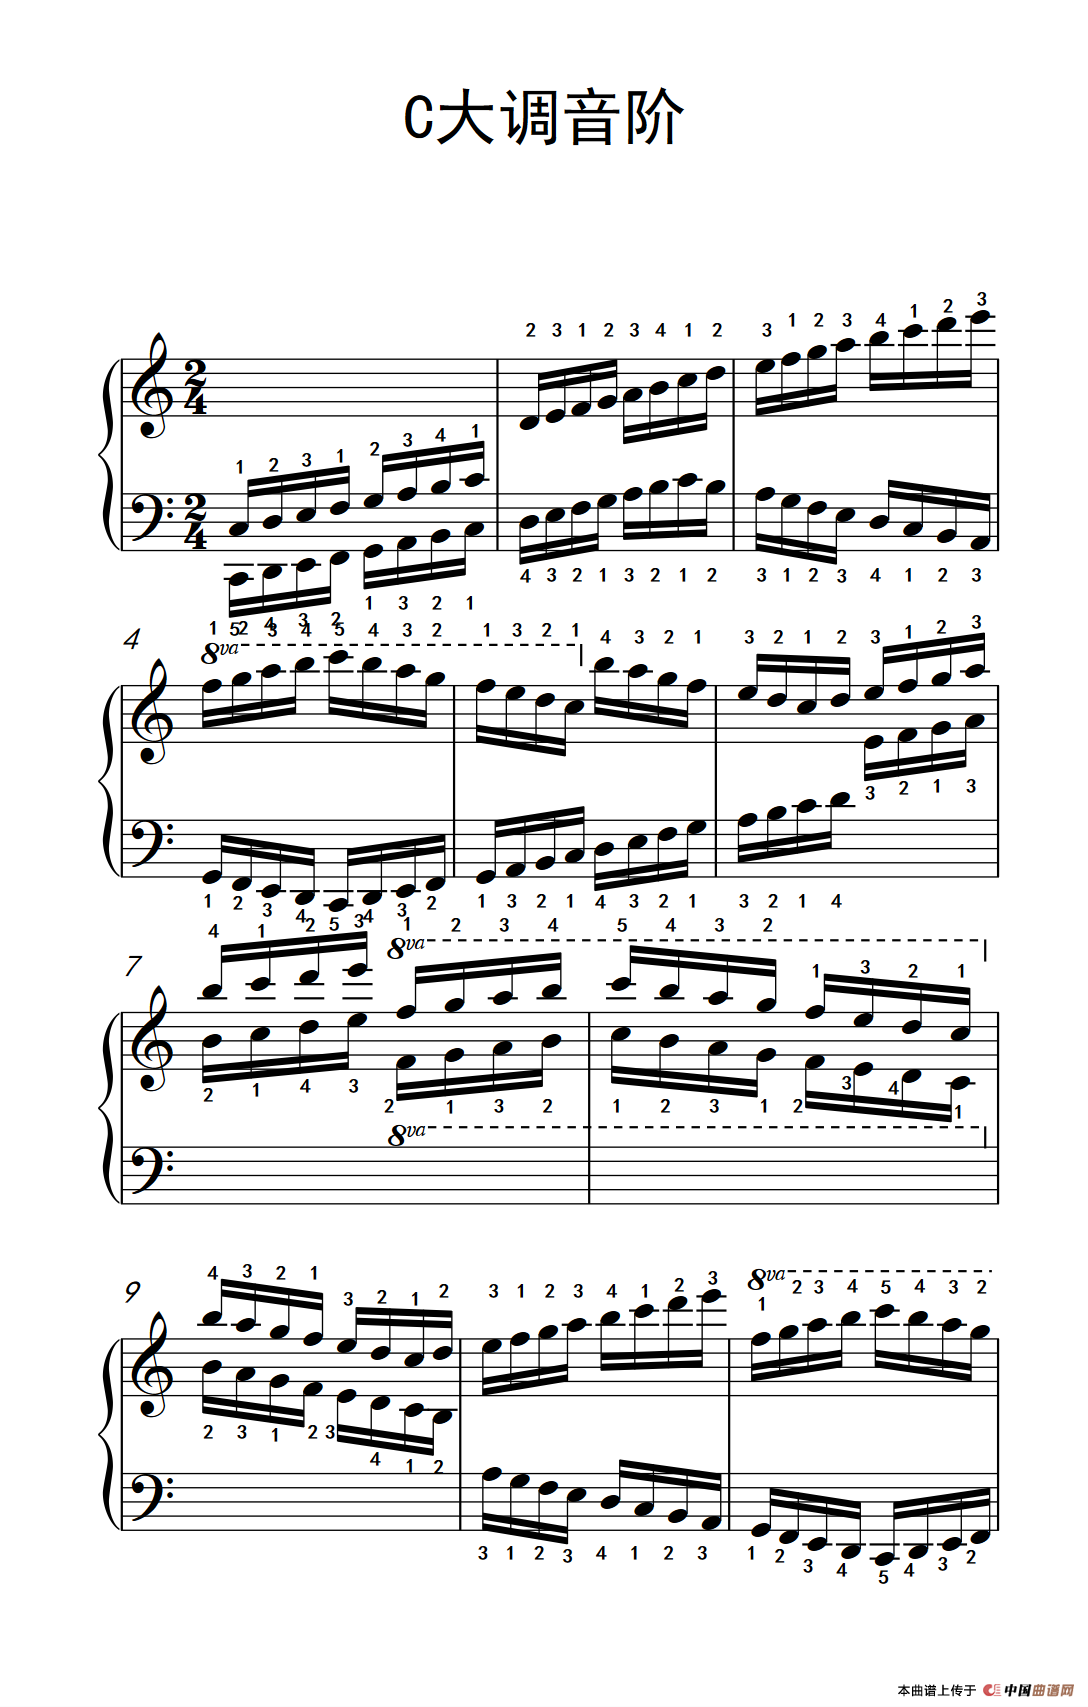 大提琴c大调音阶指法图片